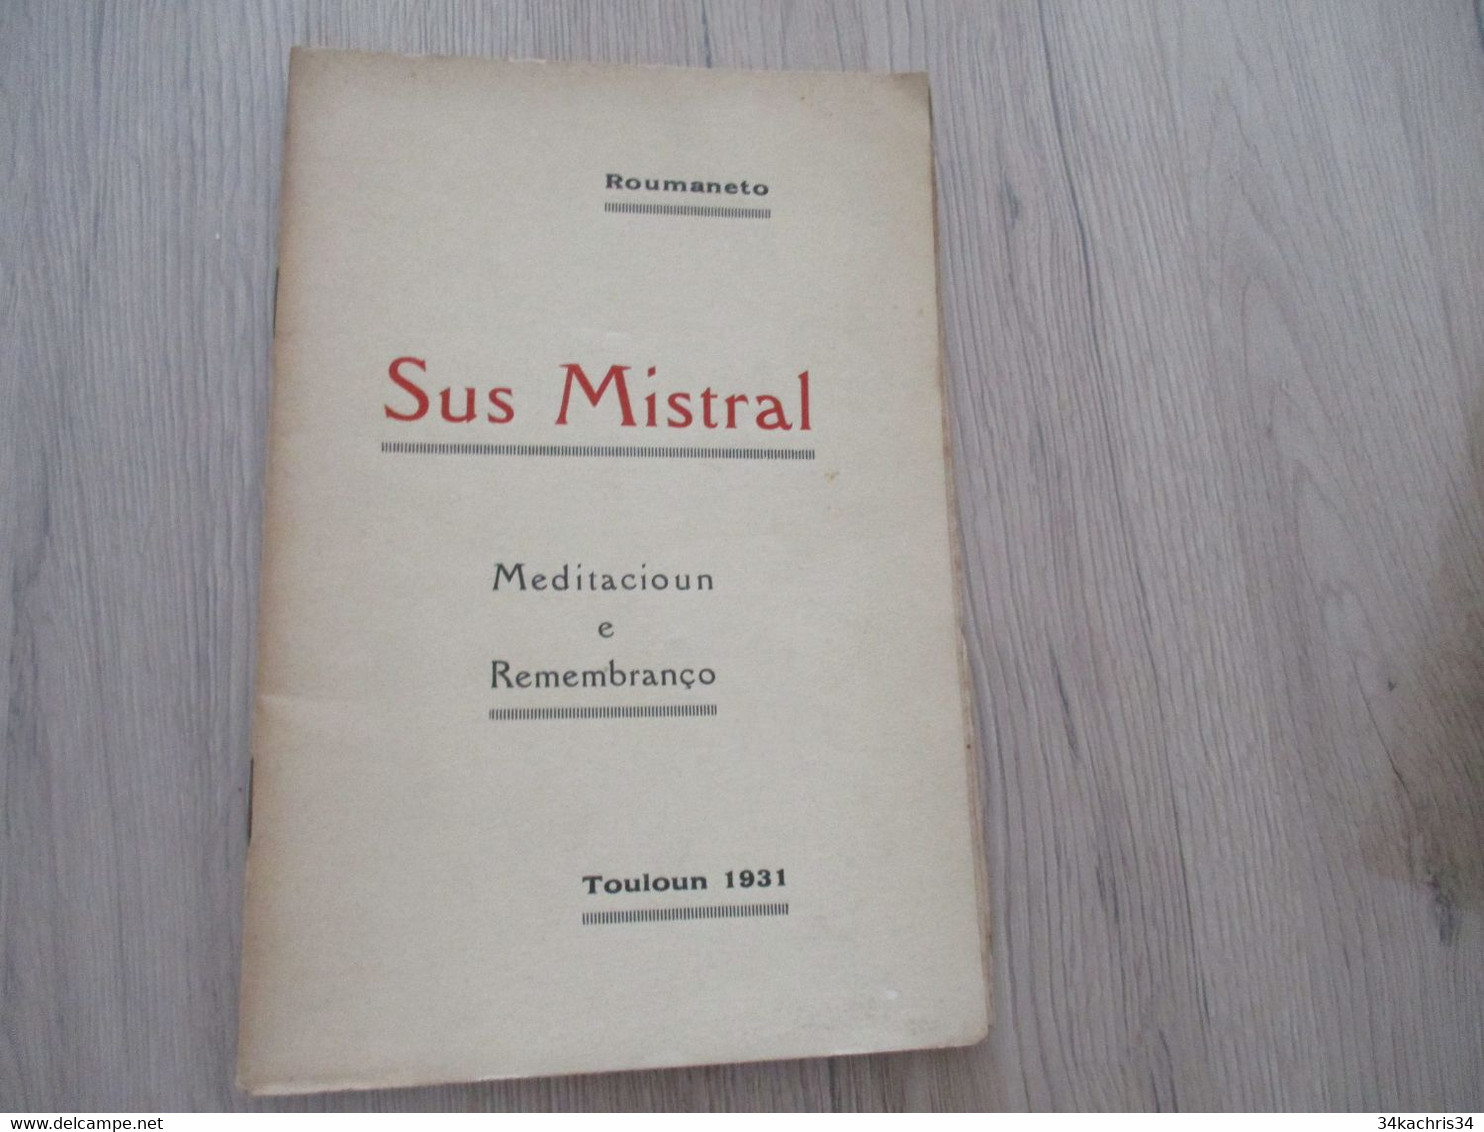 Provençal Félibrige  Mistral Roumaneto Envoi Autographe De L'auteur Sur Livre 1931 Sus Mistral Meditacioun Remembranço - Poesía